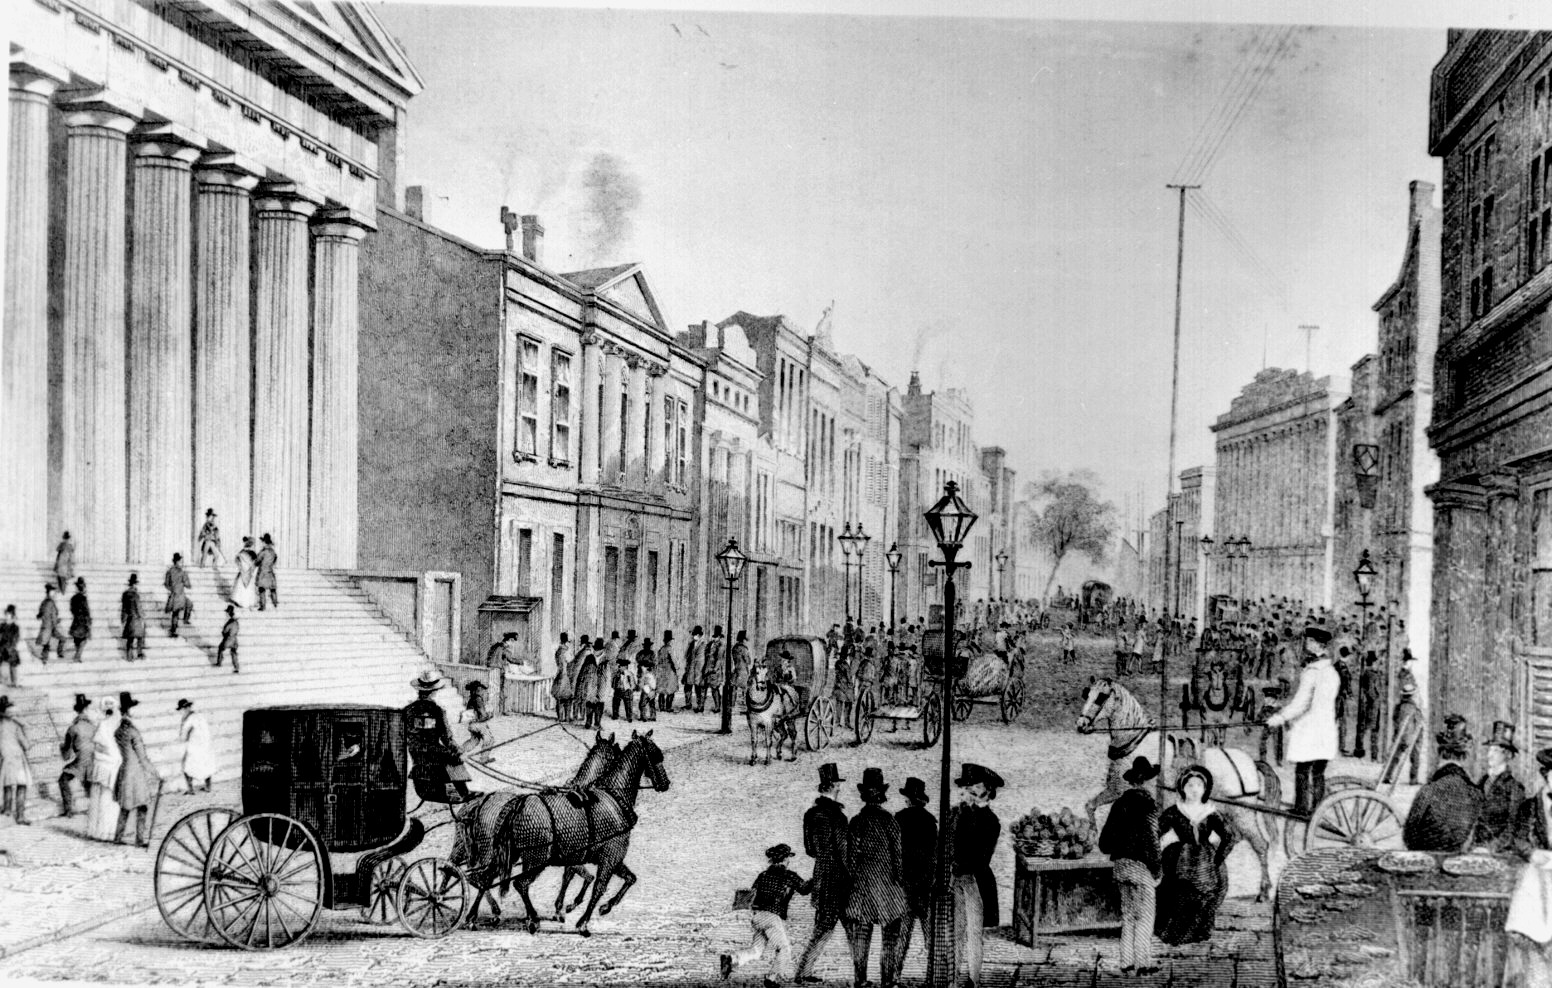 Vista de Wall Street a partir do cruzamento da Broad Street, 1867.